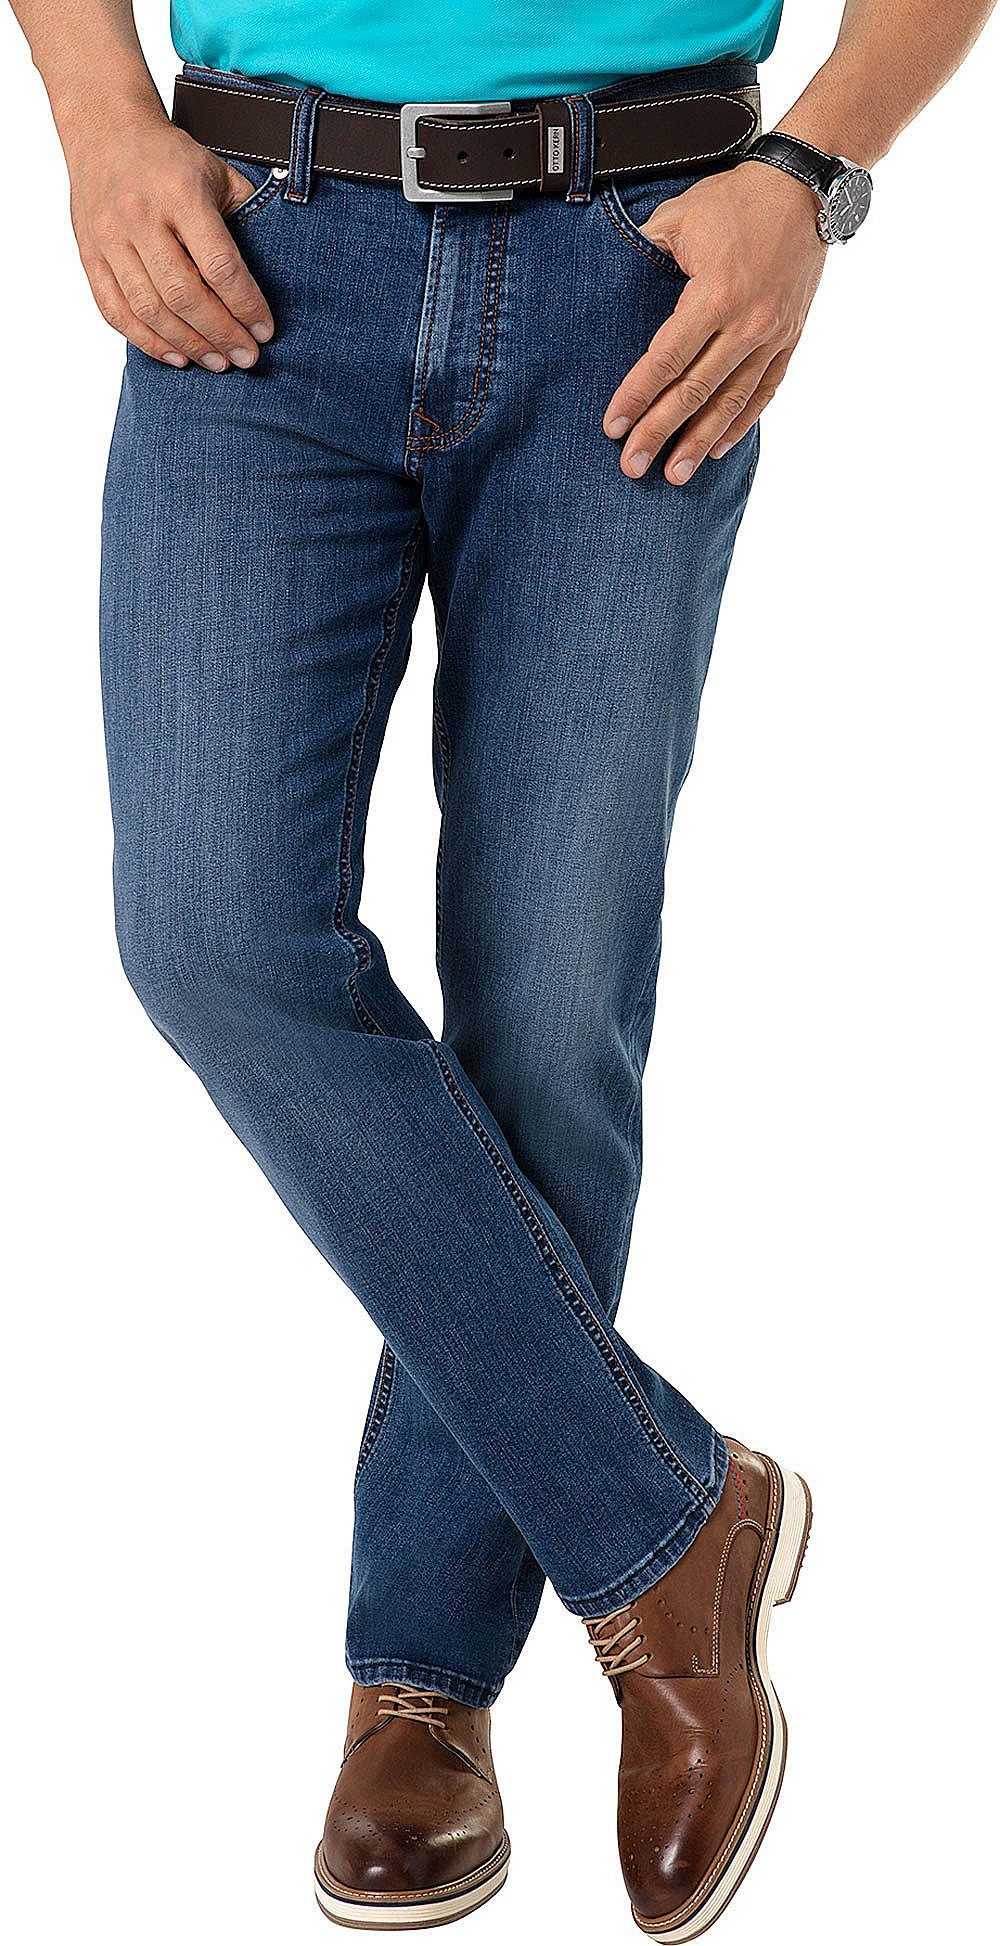 Otto Kern Kern Stretch-Jeans perfekter mit schwarz Sitz Stretch-Anteil